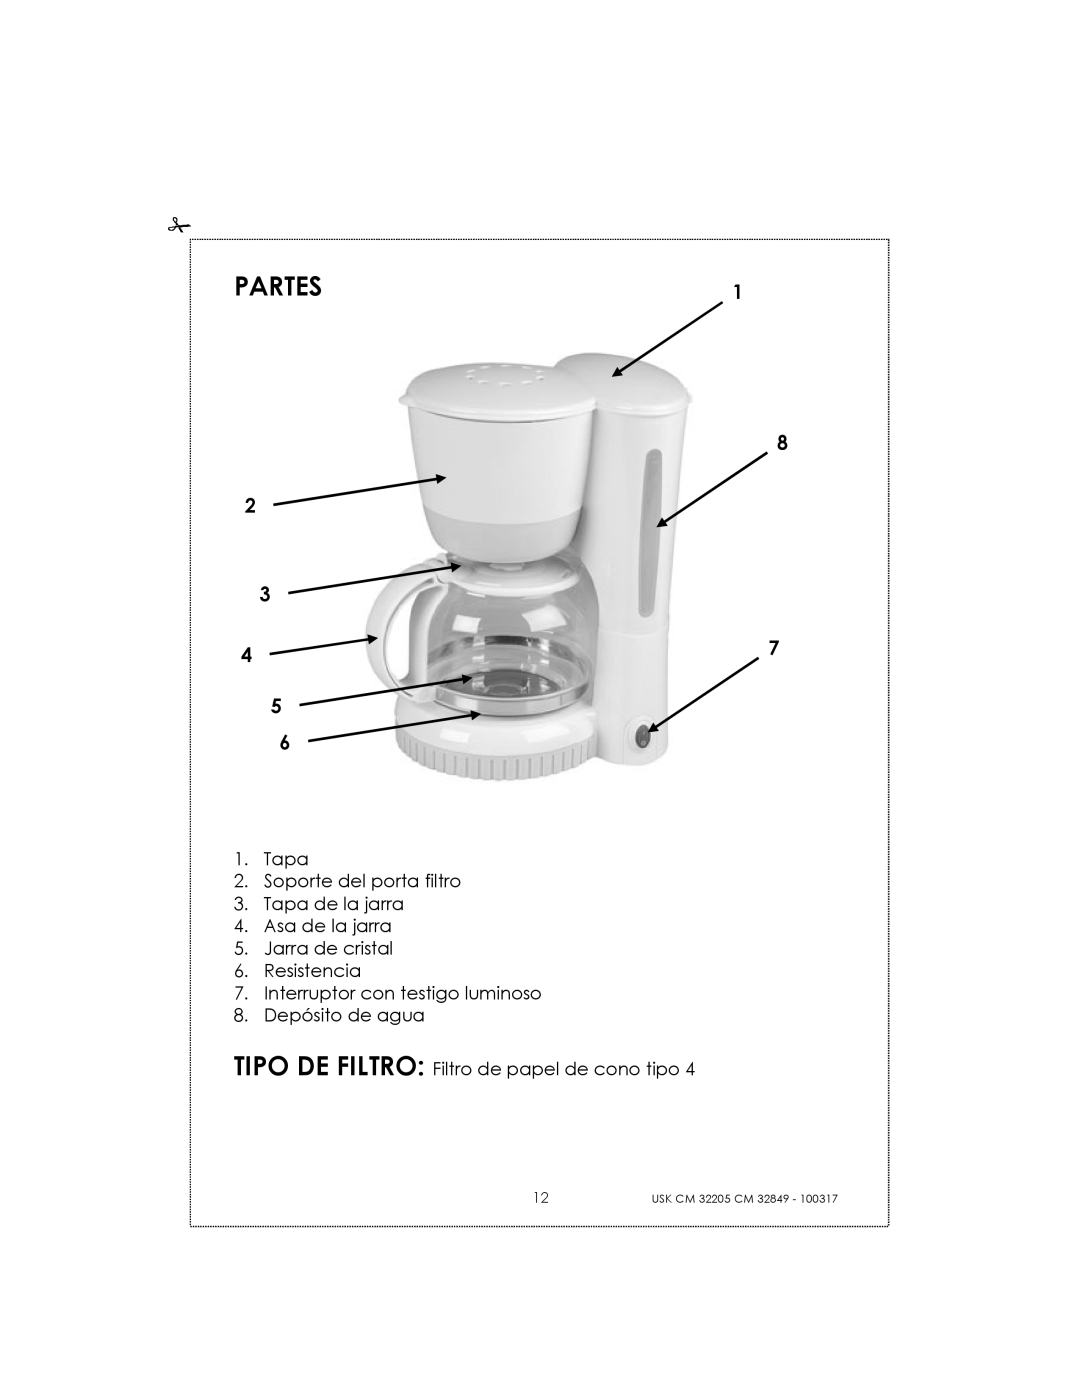 Kalorik CM32205RS manual Partes, Tapa 2.Soporte del porta filtro, Tapa de la jarra 4.Asa de la jarra, 8.Depósito de agua 